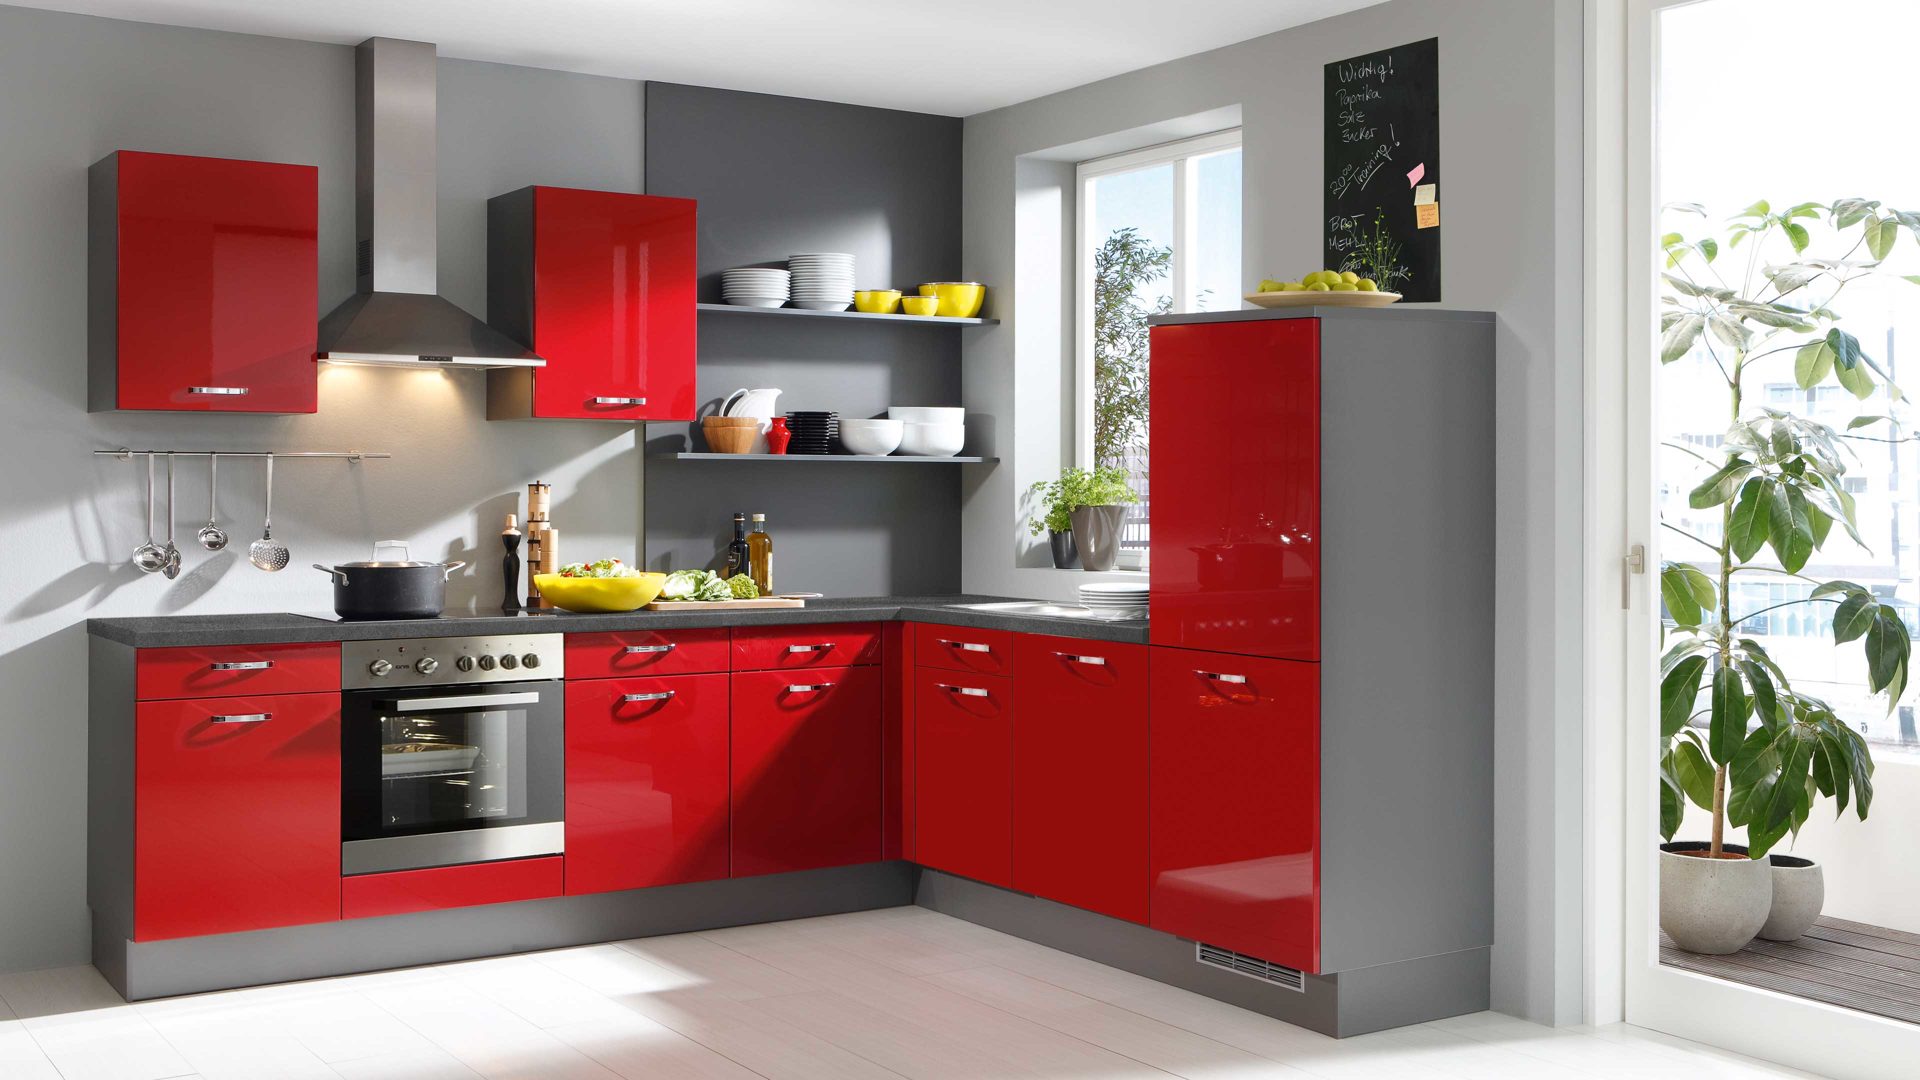 Einbauküche Pino küchen aus Holz in Rot pino Einbauküche inklusive ZANKER Einbaugeräte Rot & Edelstahl - Stellfläche ca. 275 x 235 cm